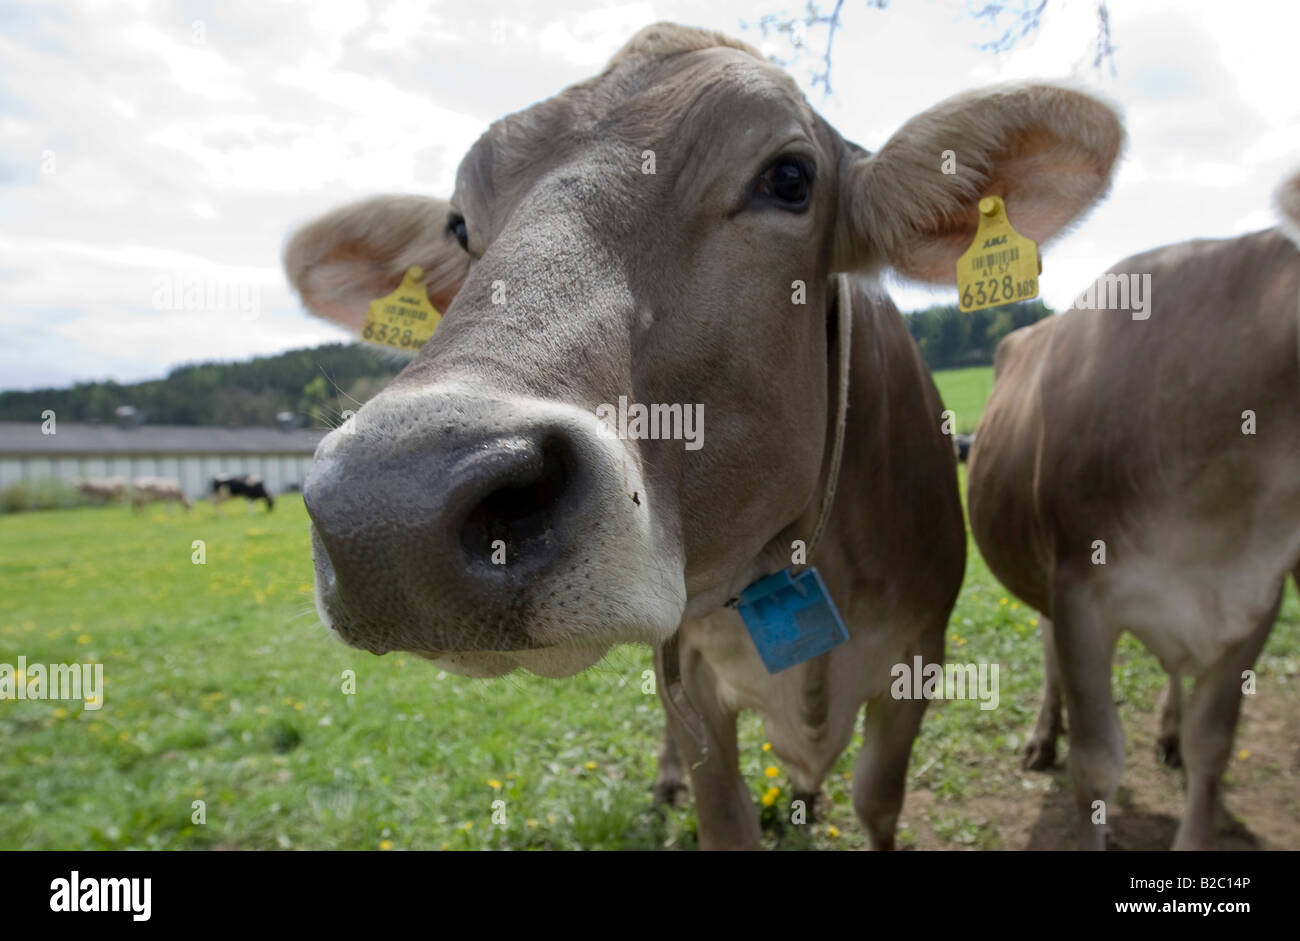 Kuh, beschriftet mit zwei Ohrmarken, gemäß dem Gesetz zur Kennzeichnung von Tieren, Steiermark, Österreich, Europa Stockfoto